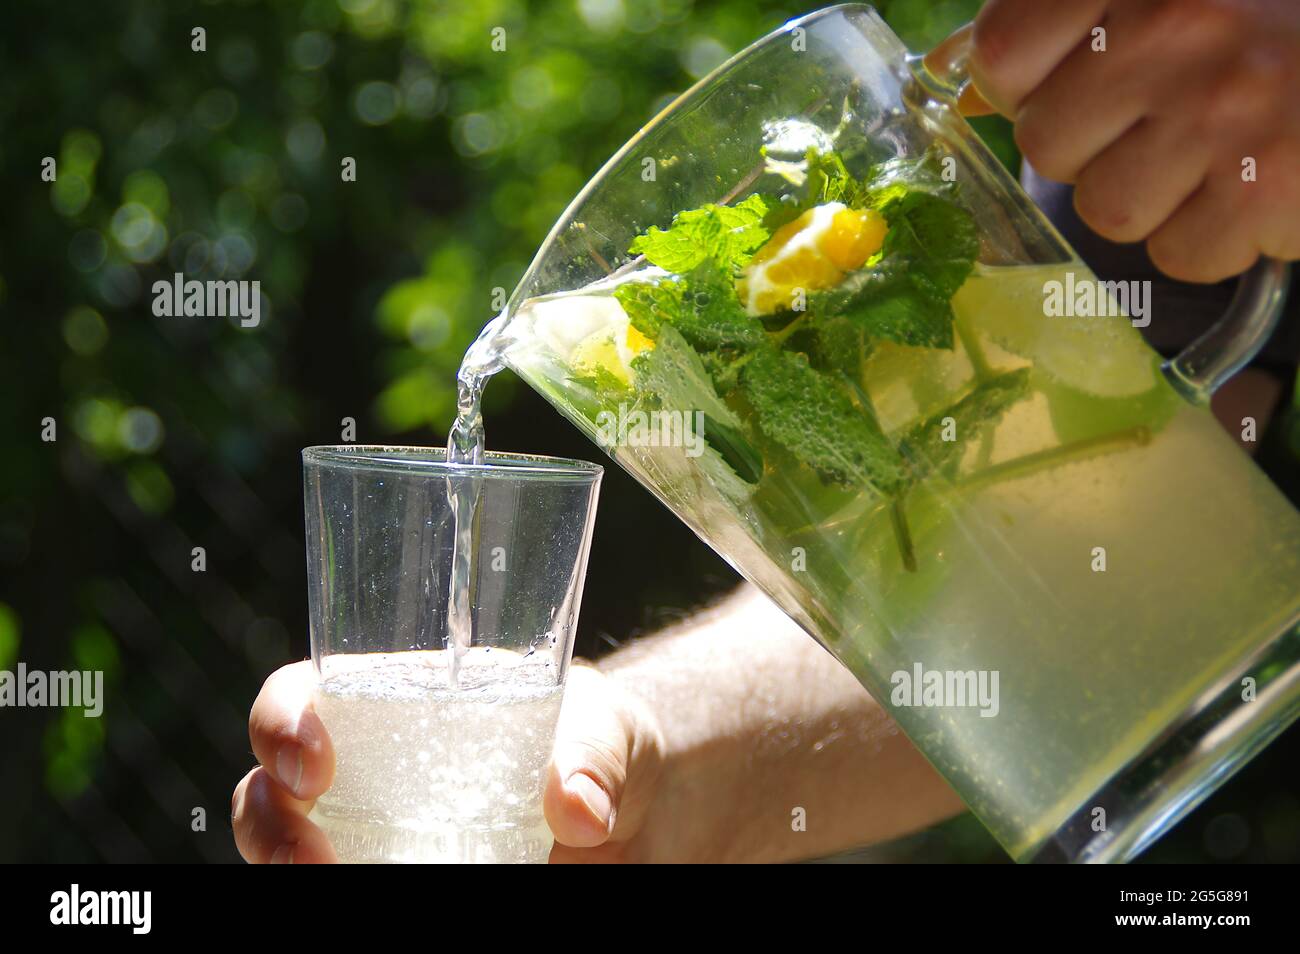 Kühle und frische hausgemachte Limonade. Ein kaltes Zitronengetränk mit Zitrusscheiben, aus einem Krug in ein Glas gegossen. Bio Minzgetränk mit grünen Blättern. Stockfoto